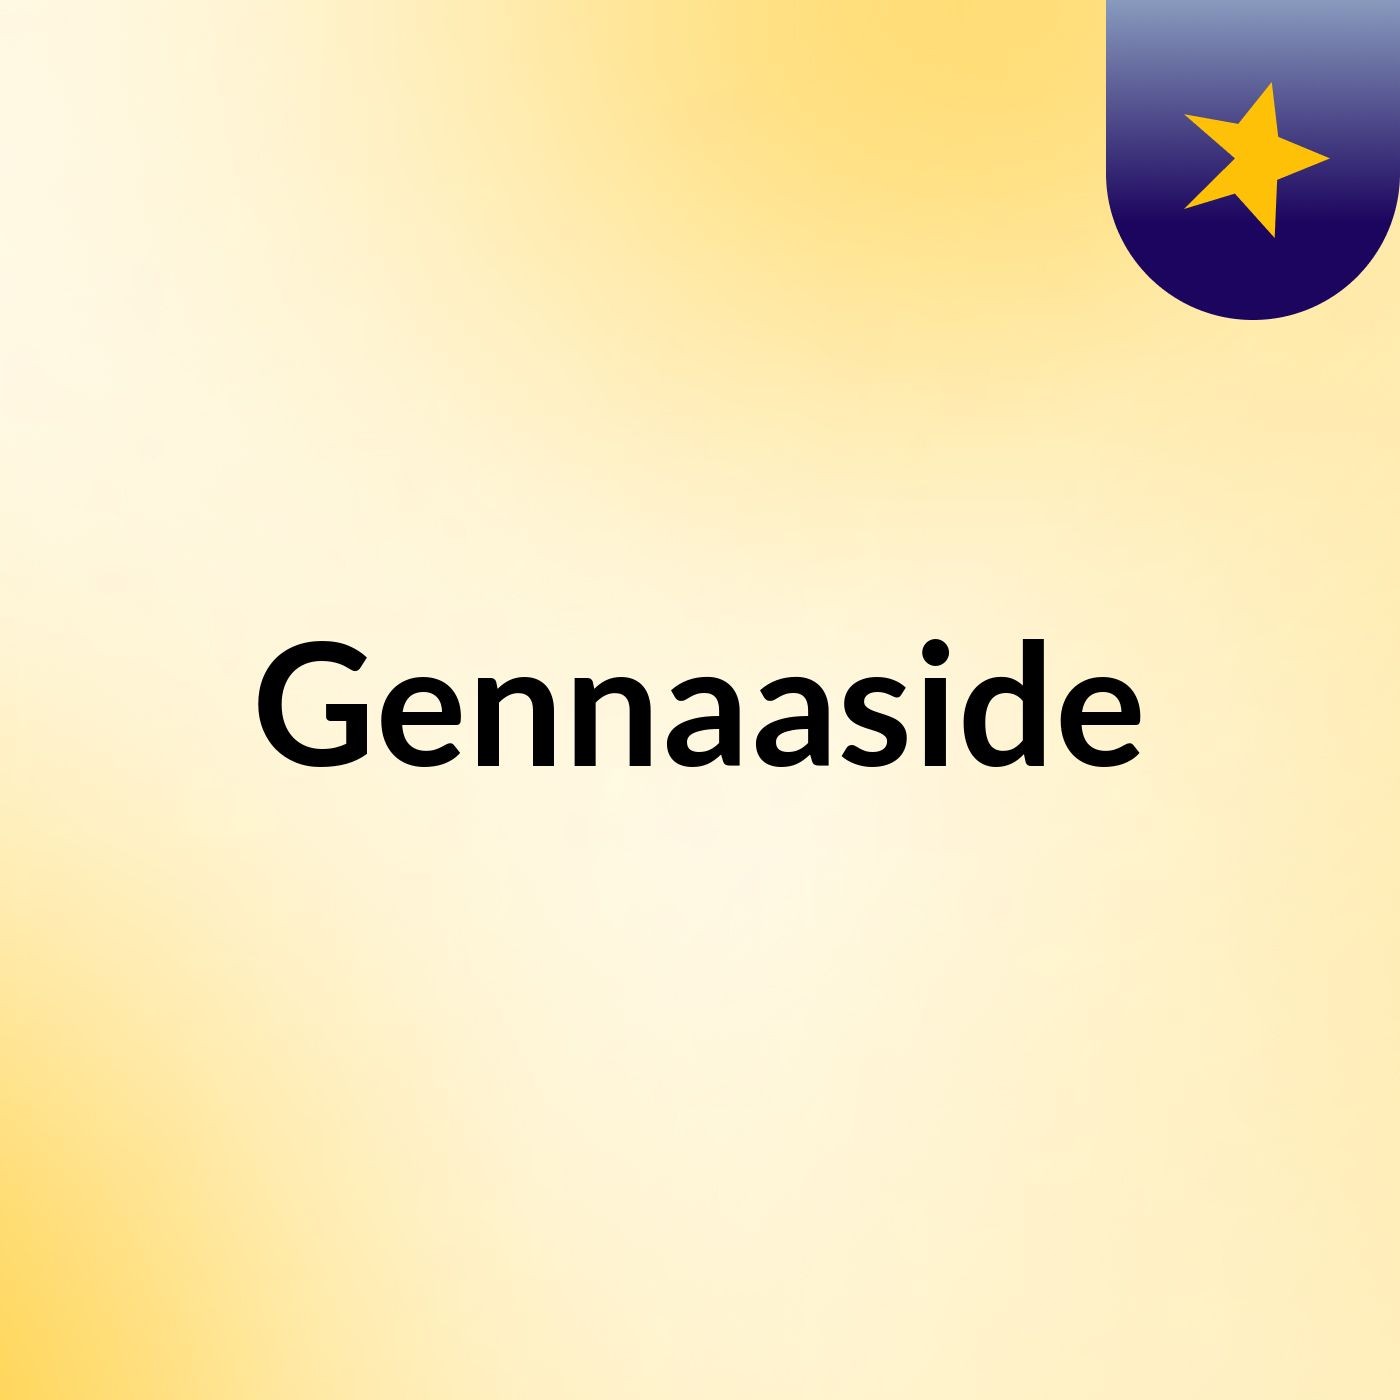 Episode 9 - Gennaaside